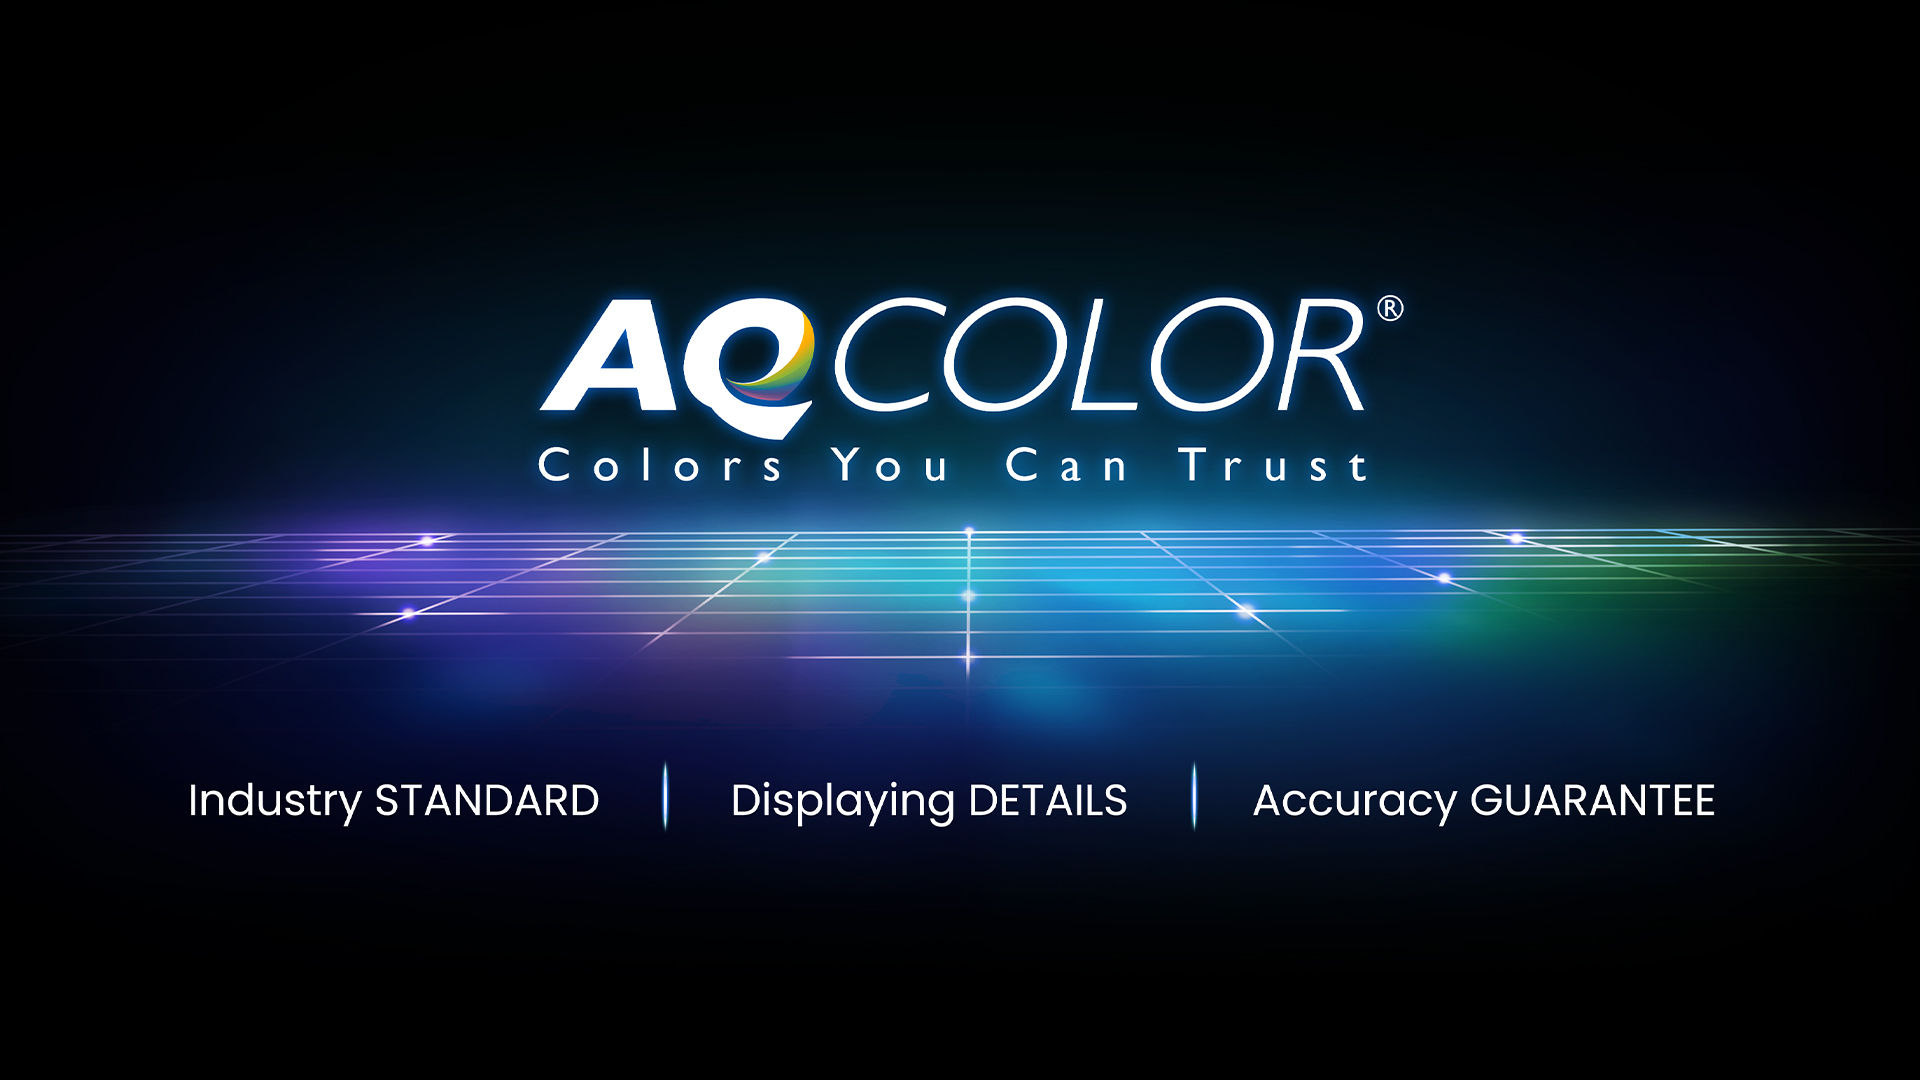 Ervaar nauwkeurige kleurreproductie met BenQ's AQCOLOR-technologie.